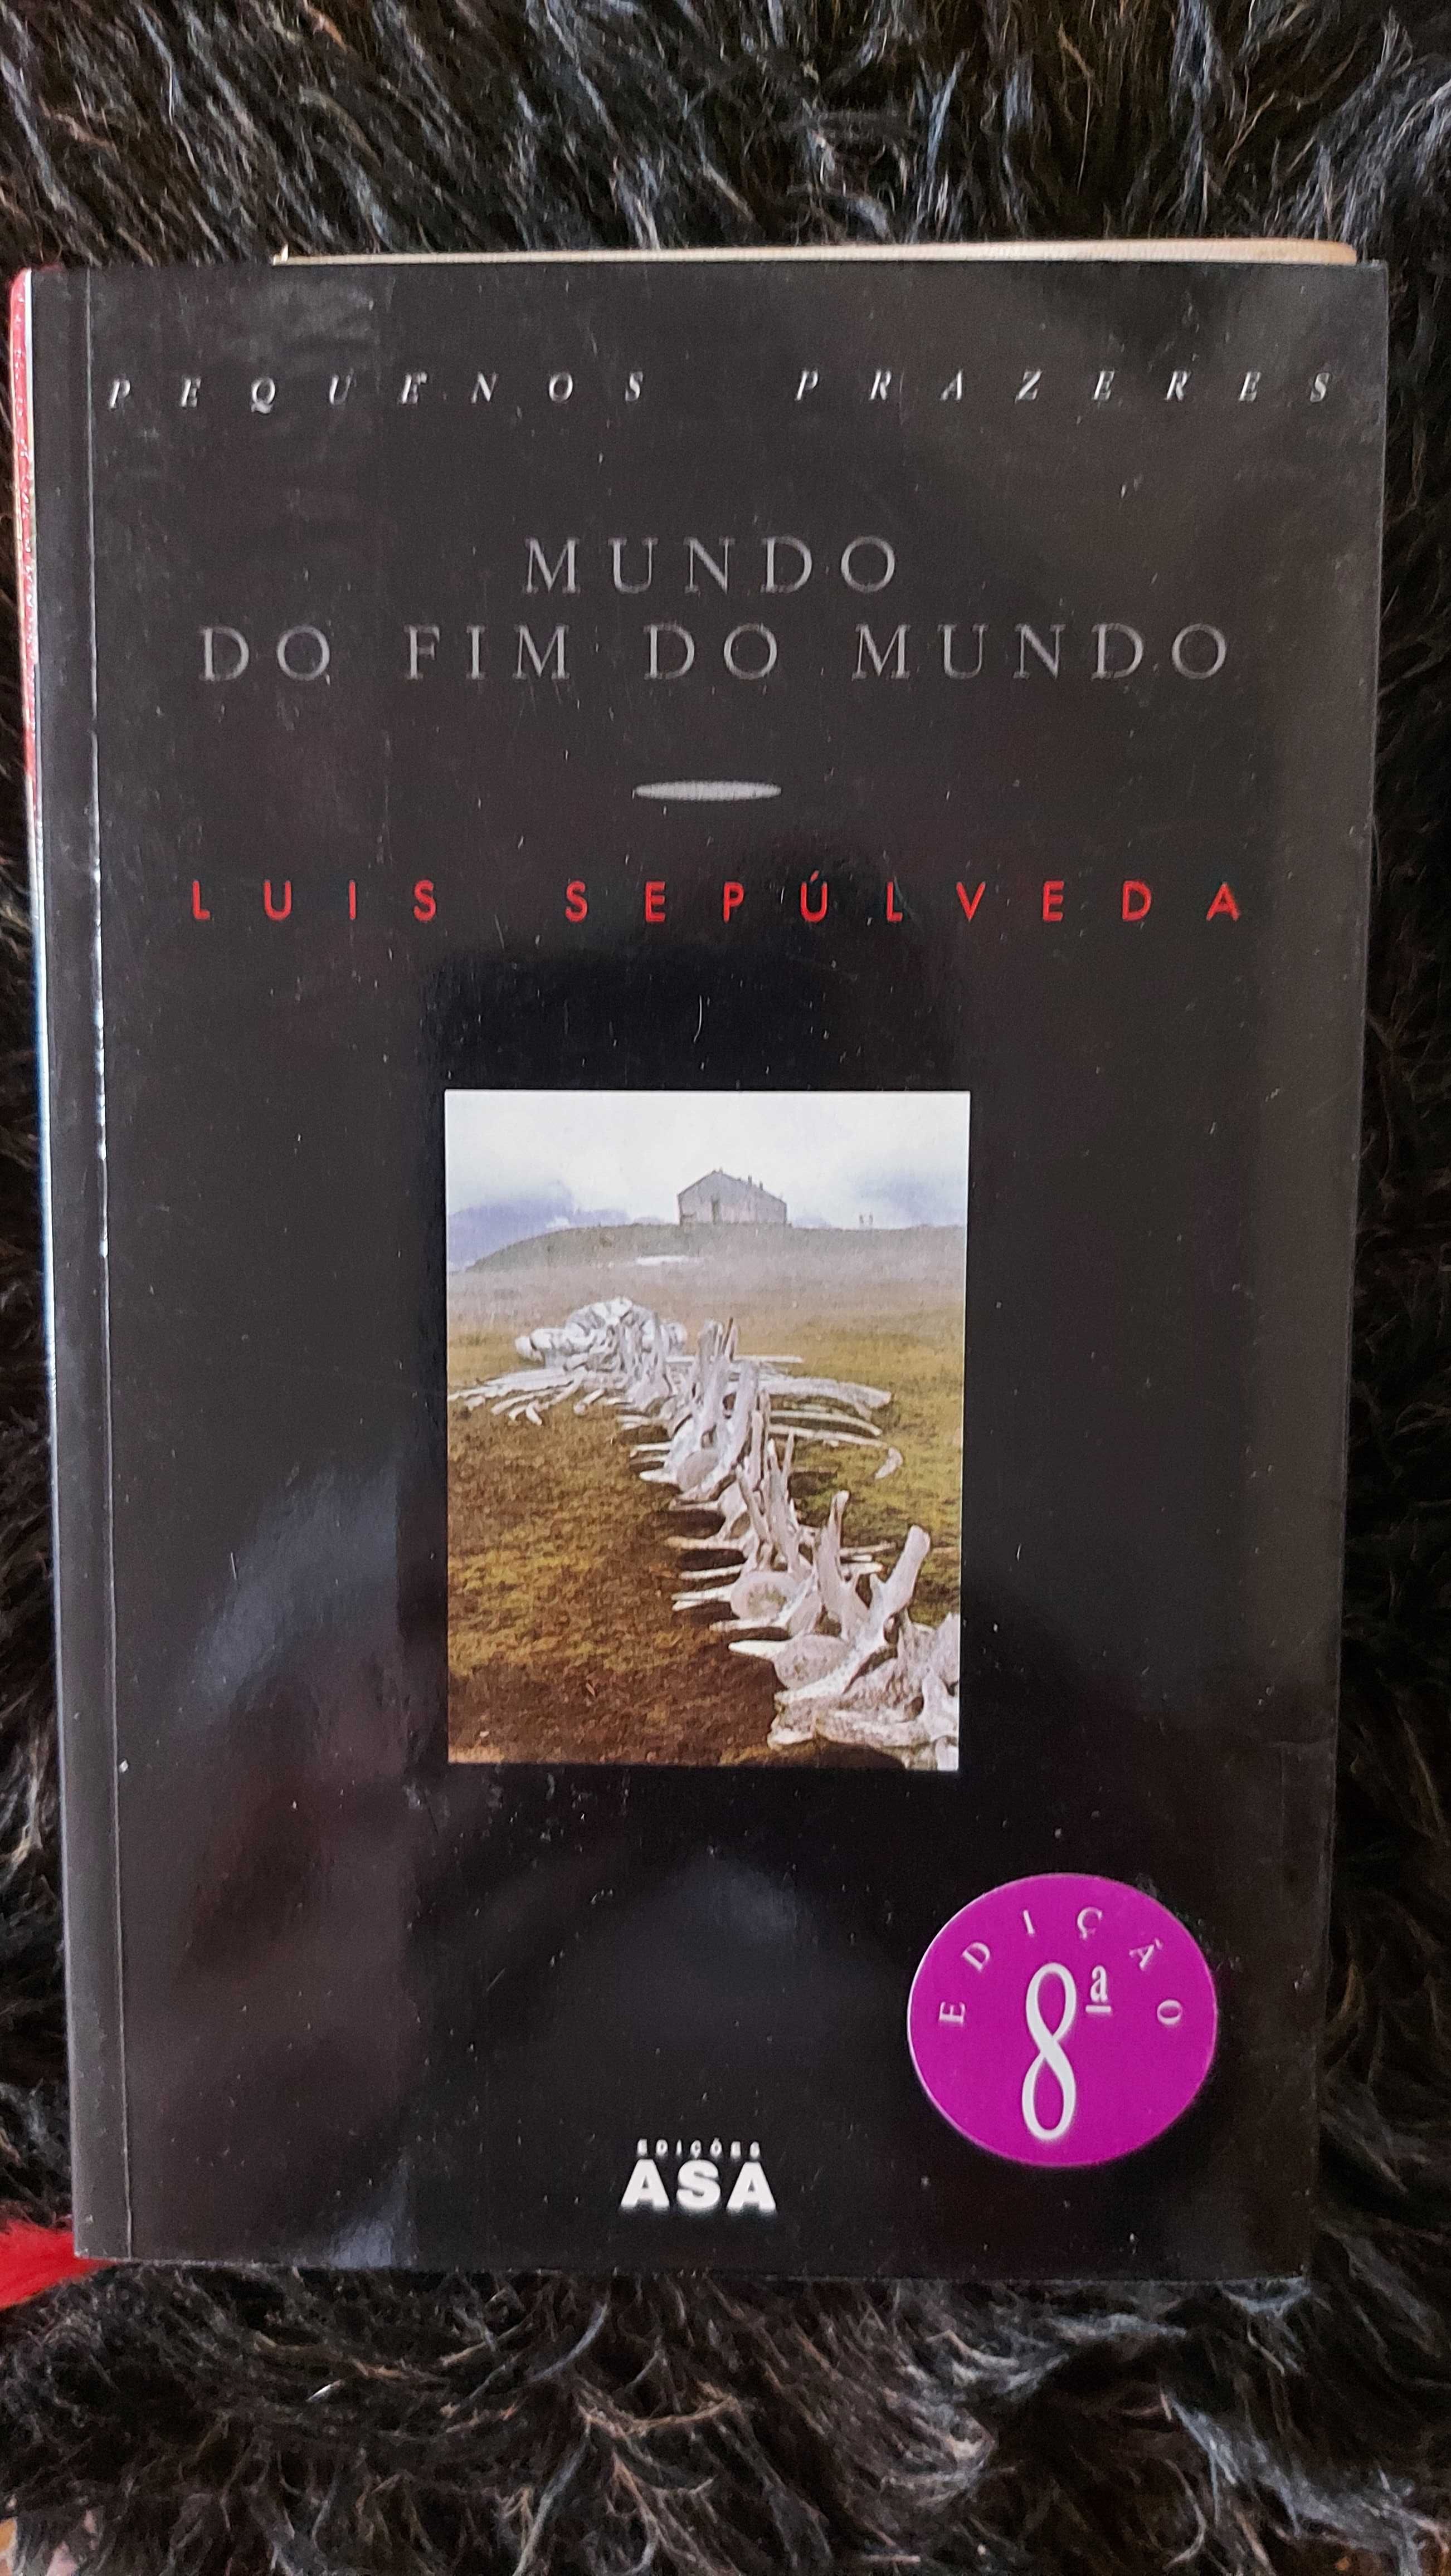 Luis Sepúlveda vários livros